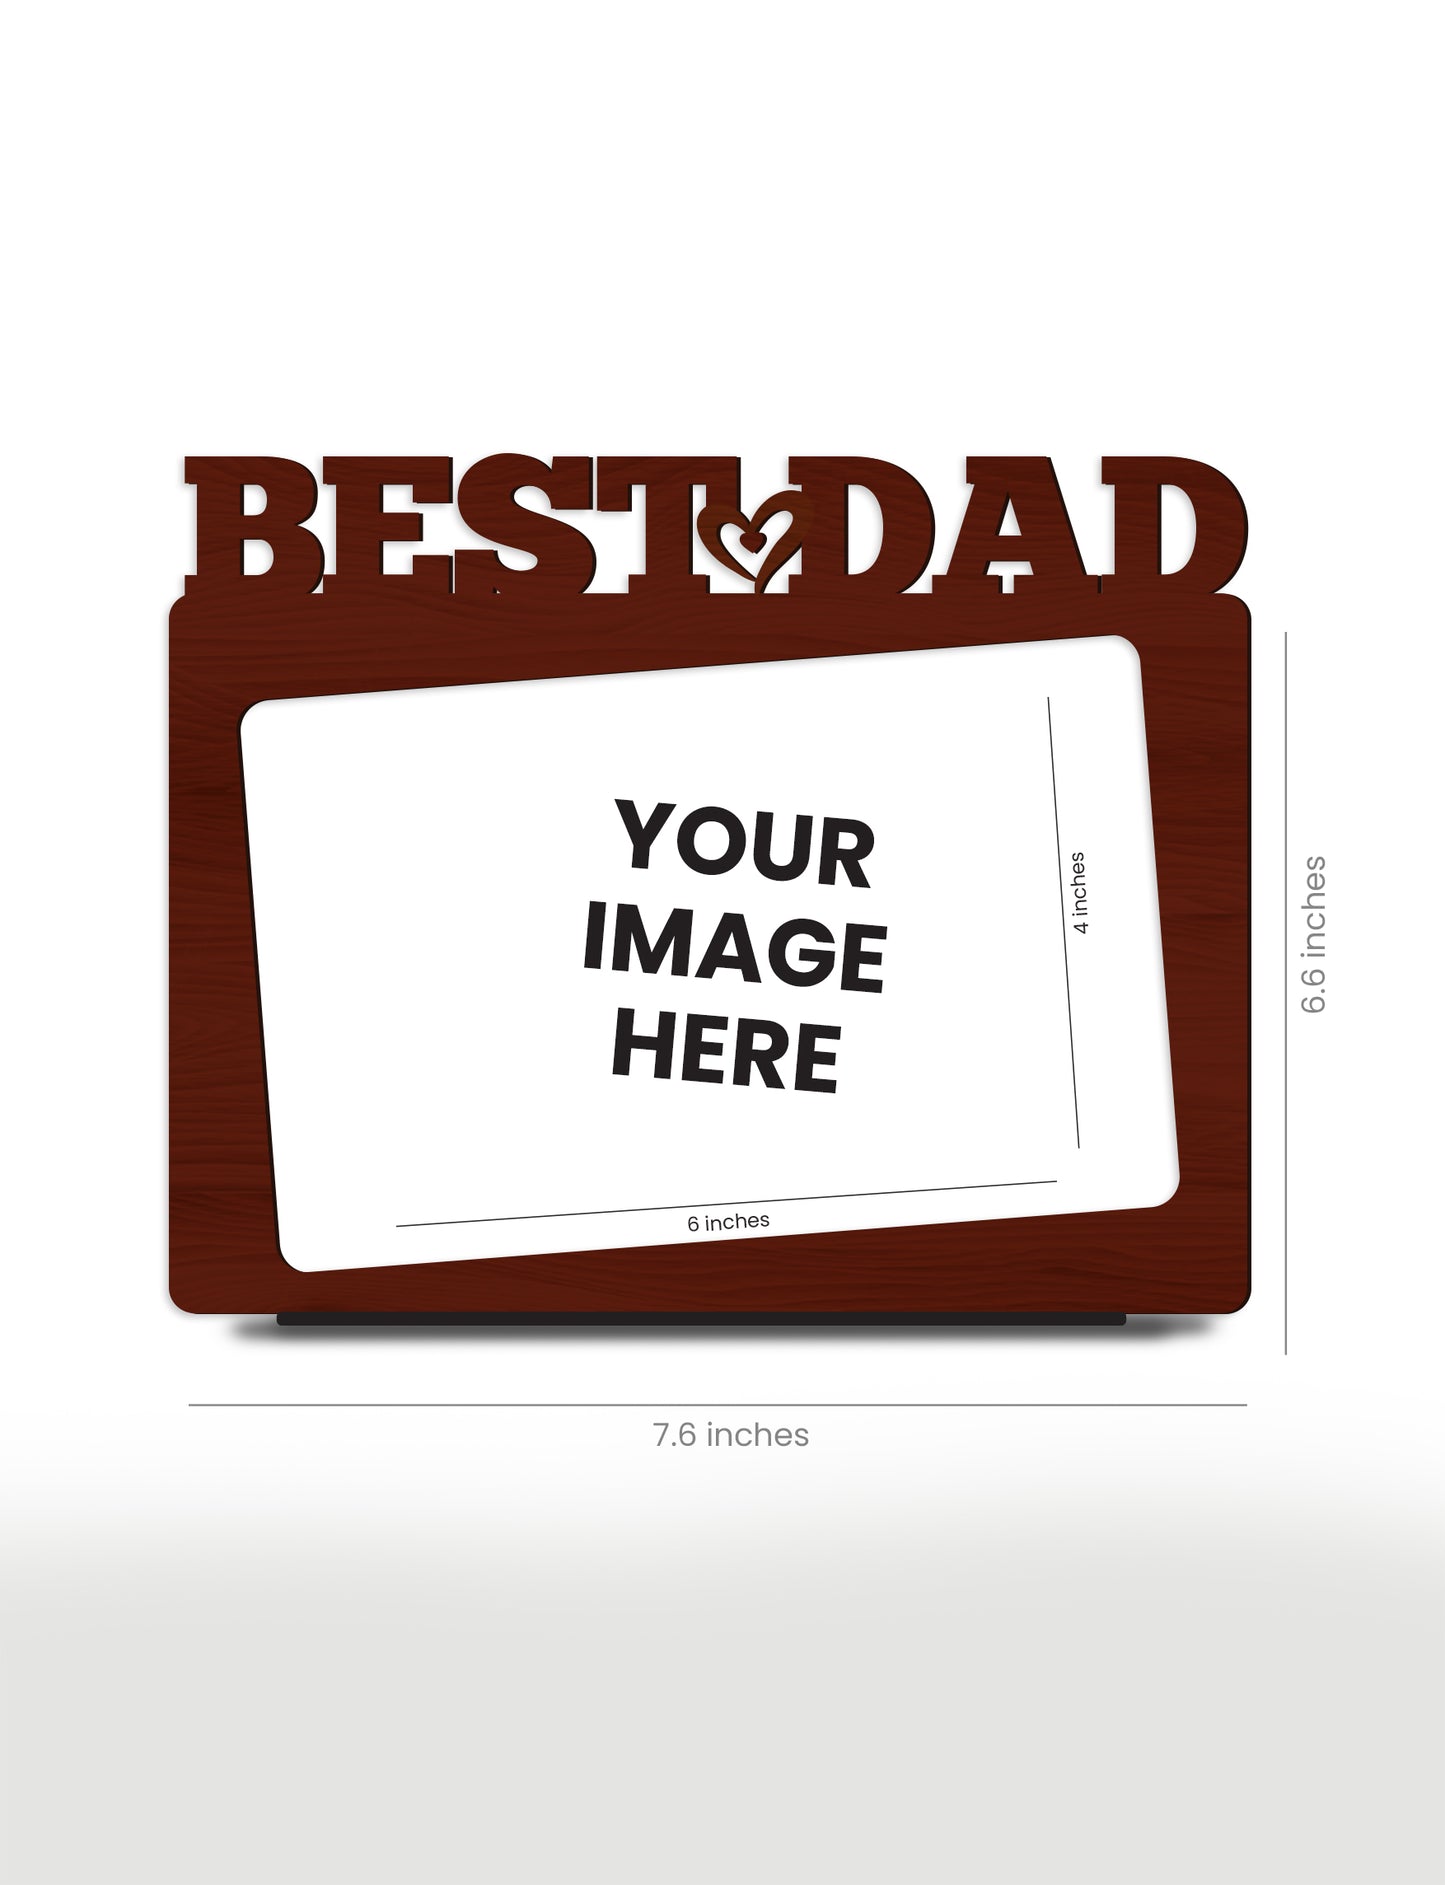 Personalised Pre-Printed Best Dad Photo Frame